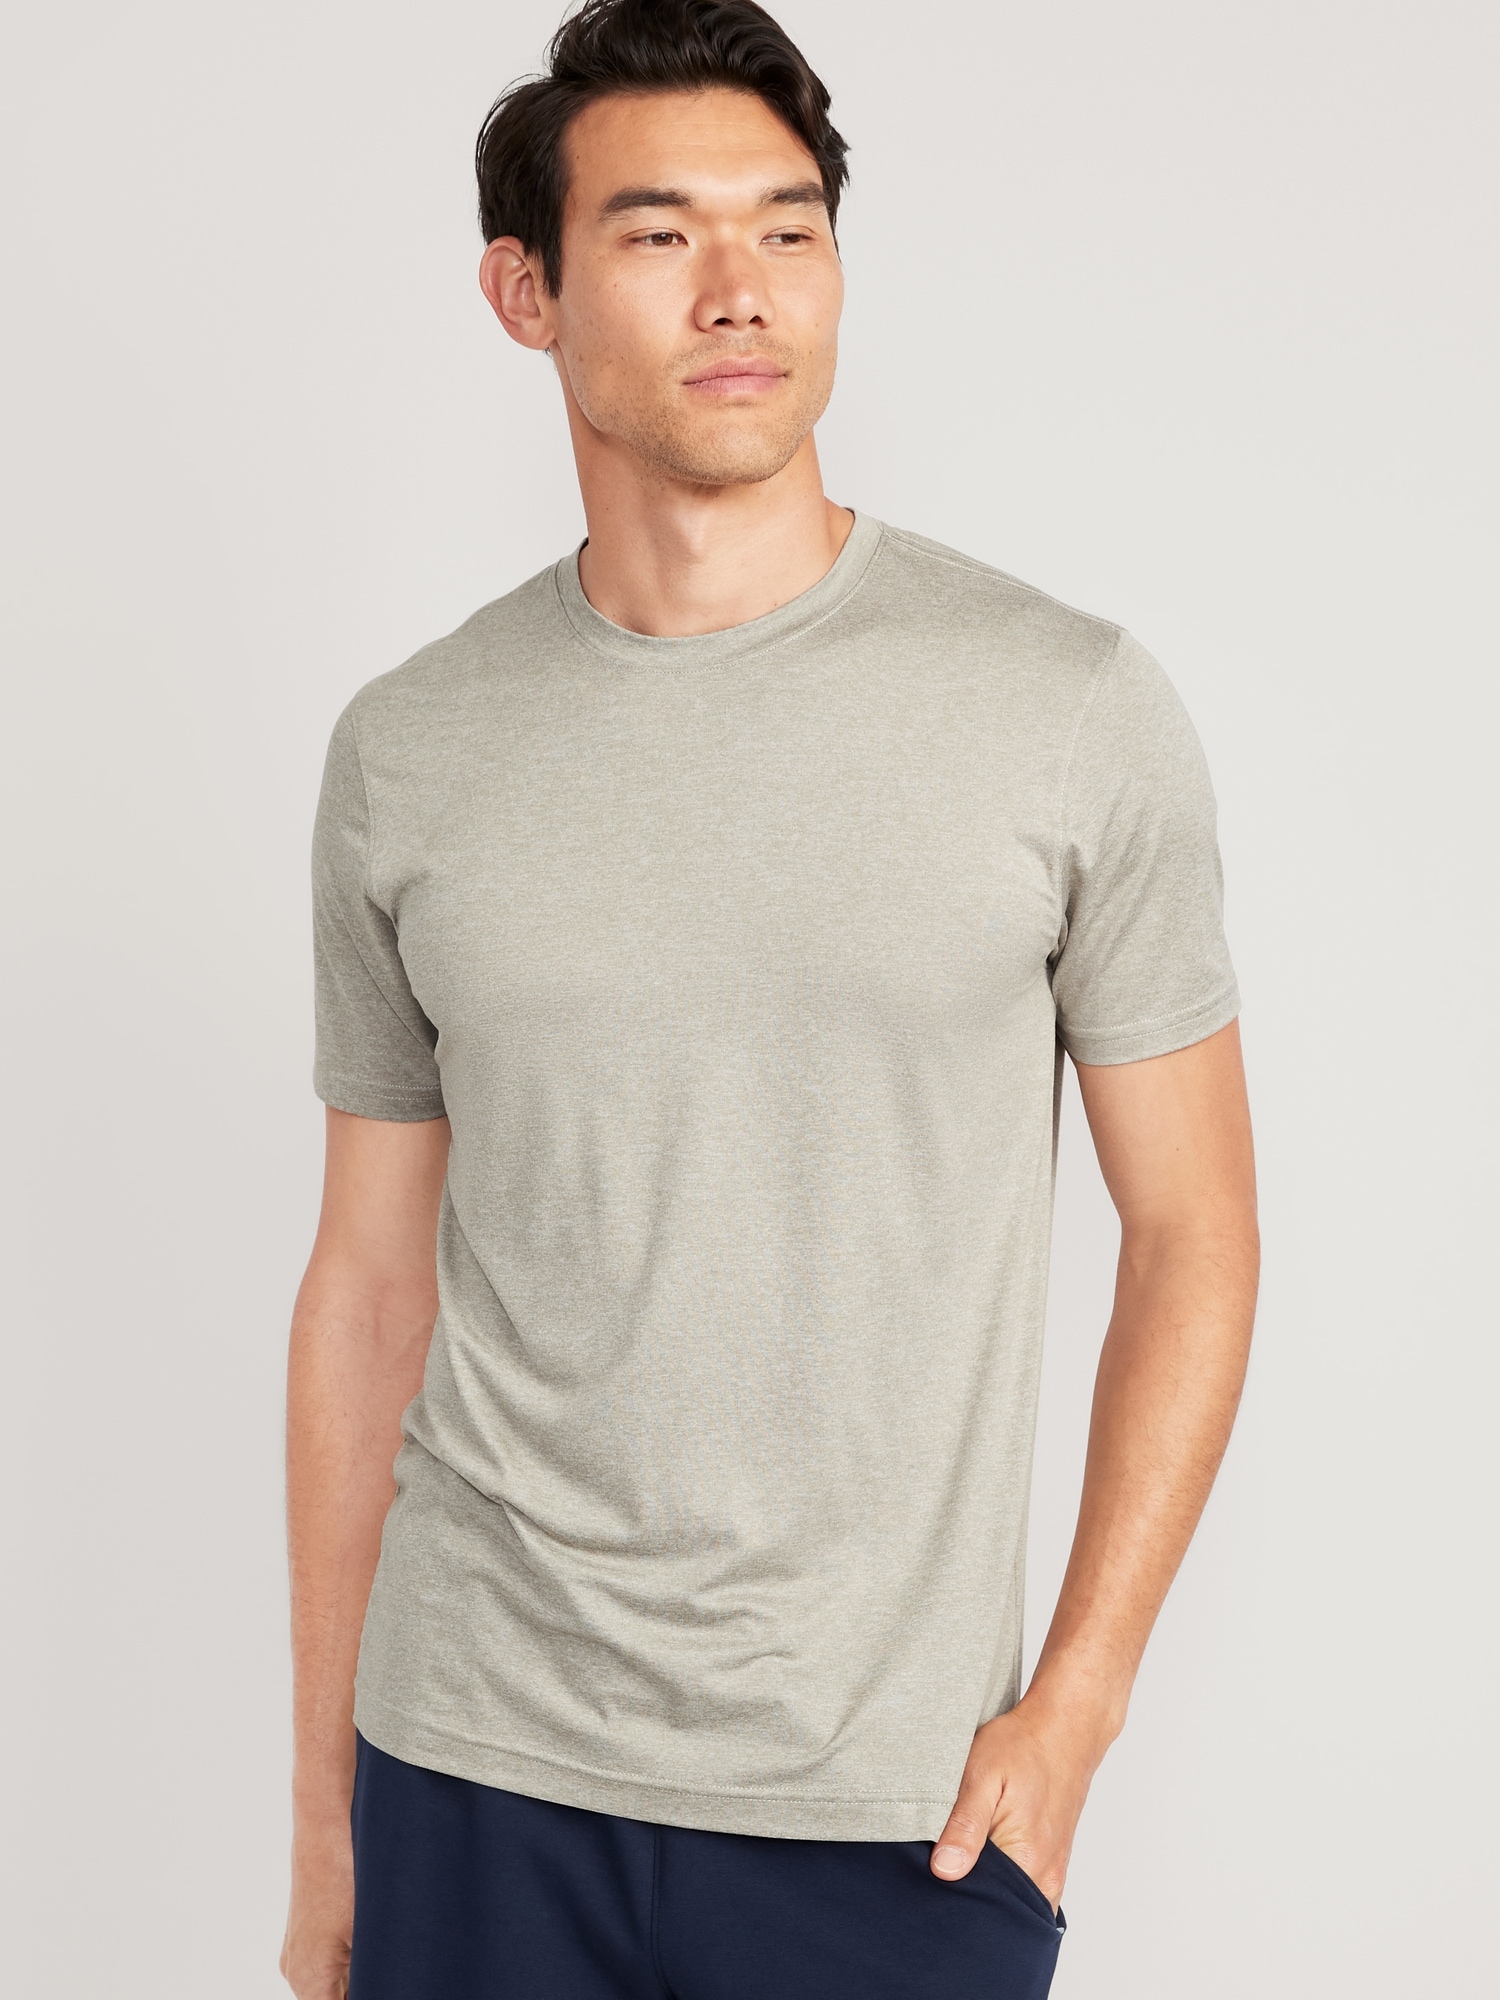 Old Navy Cloud 94 Soft T-Shirt for Men beige. 1